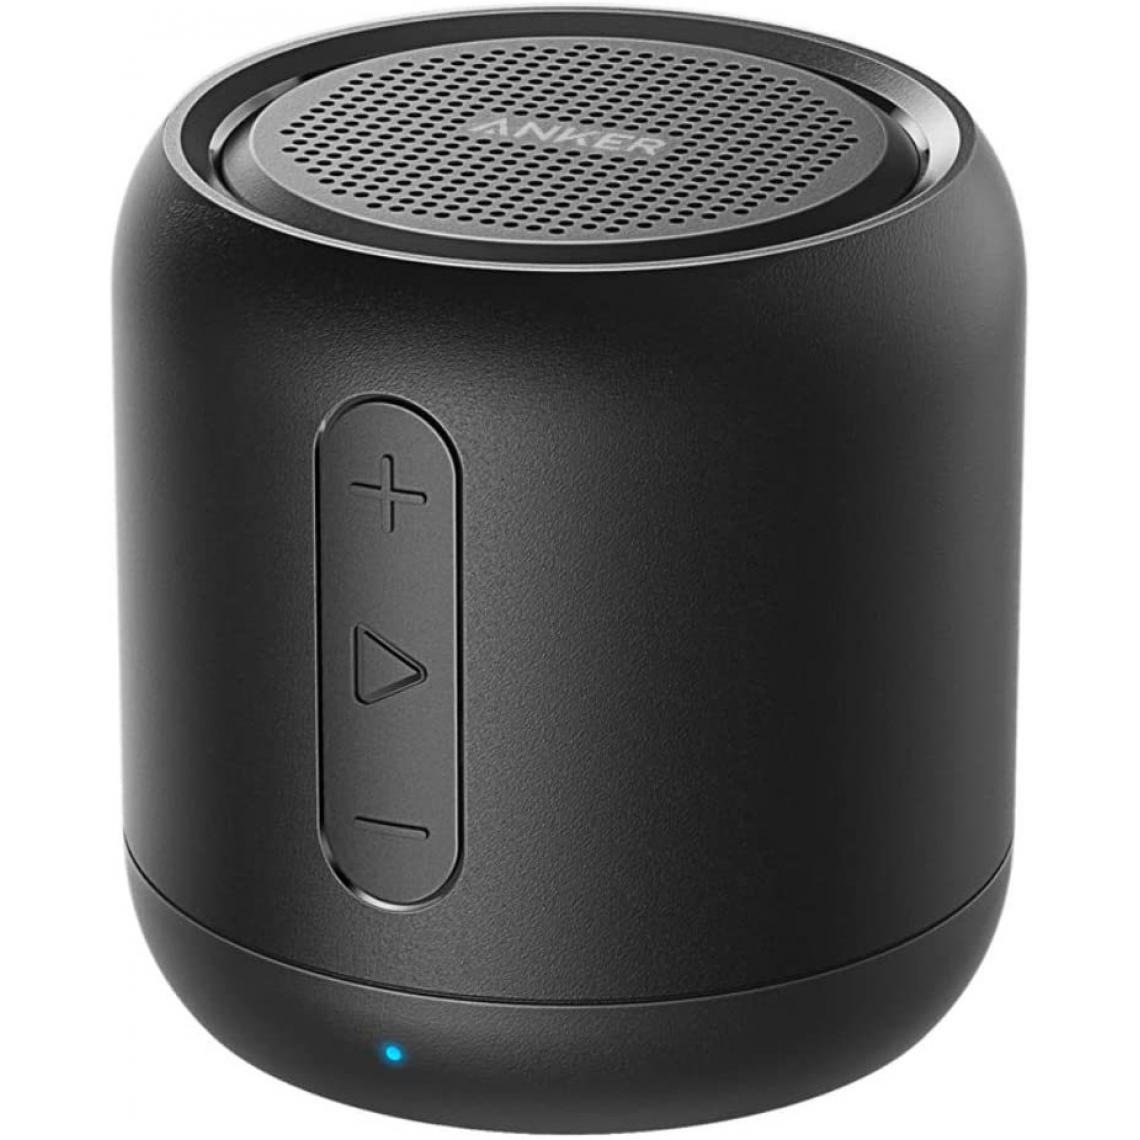 Chrono - Anker SoundCore mini Enceinte Bluetooth Portable - Haut Parleur avec Autonomie de 15 Heures, Portée Bluetooth de 20 Mètres, Port Micro SD, Micro et Basses Renforcées,Noir - Enceintes Hifi